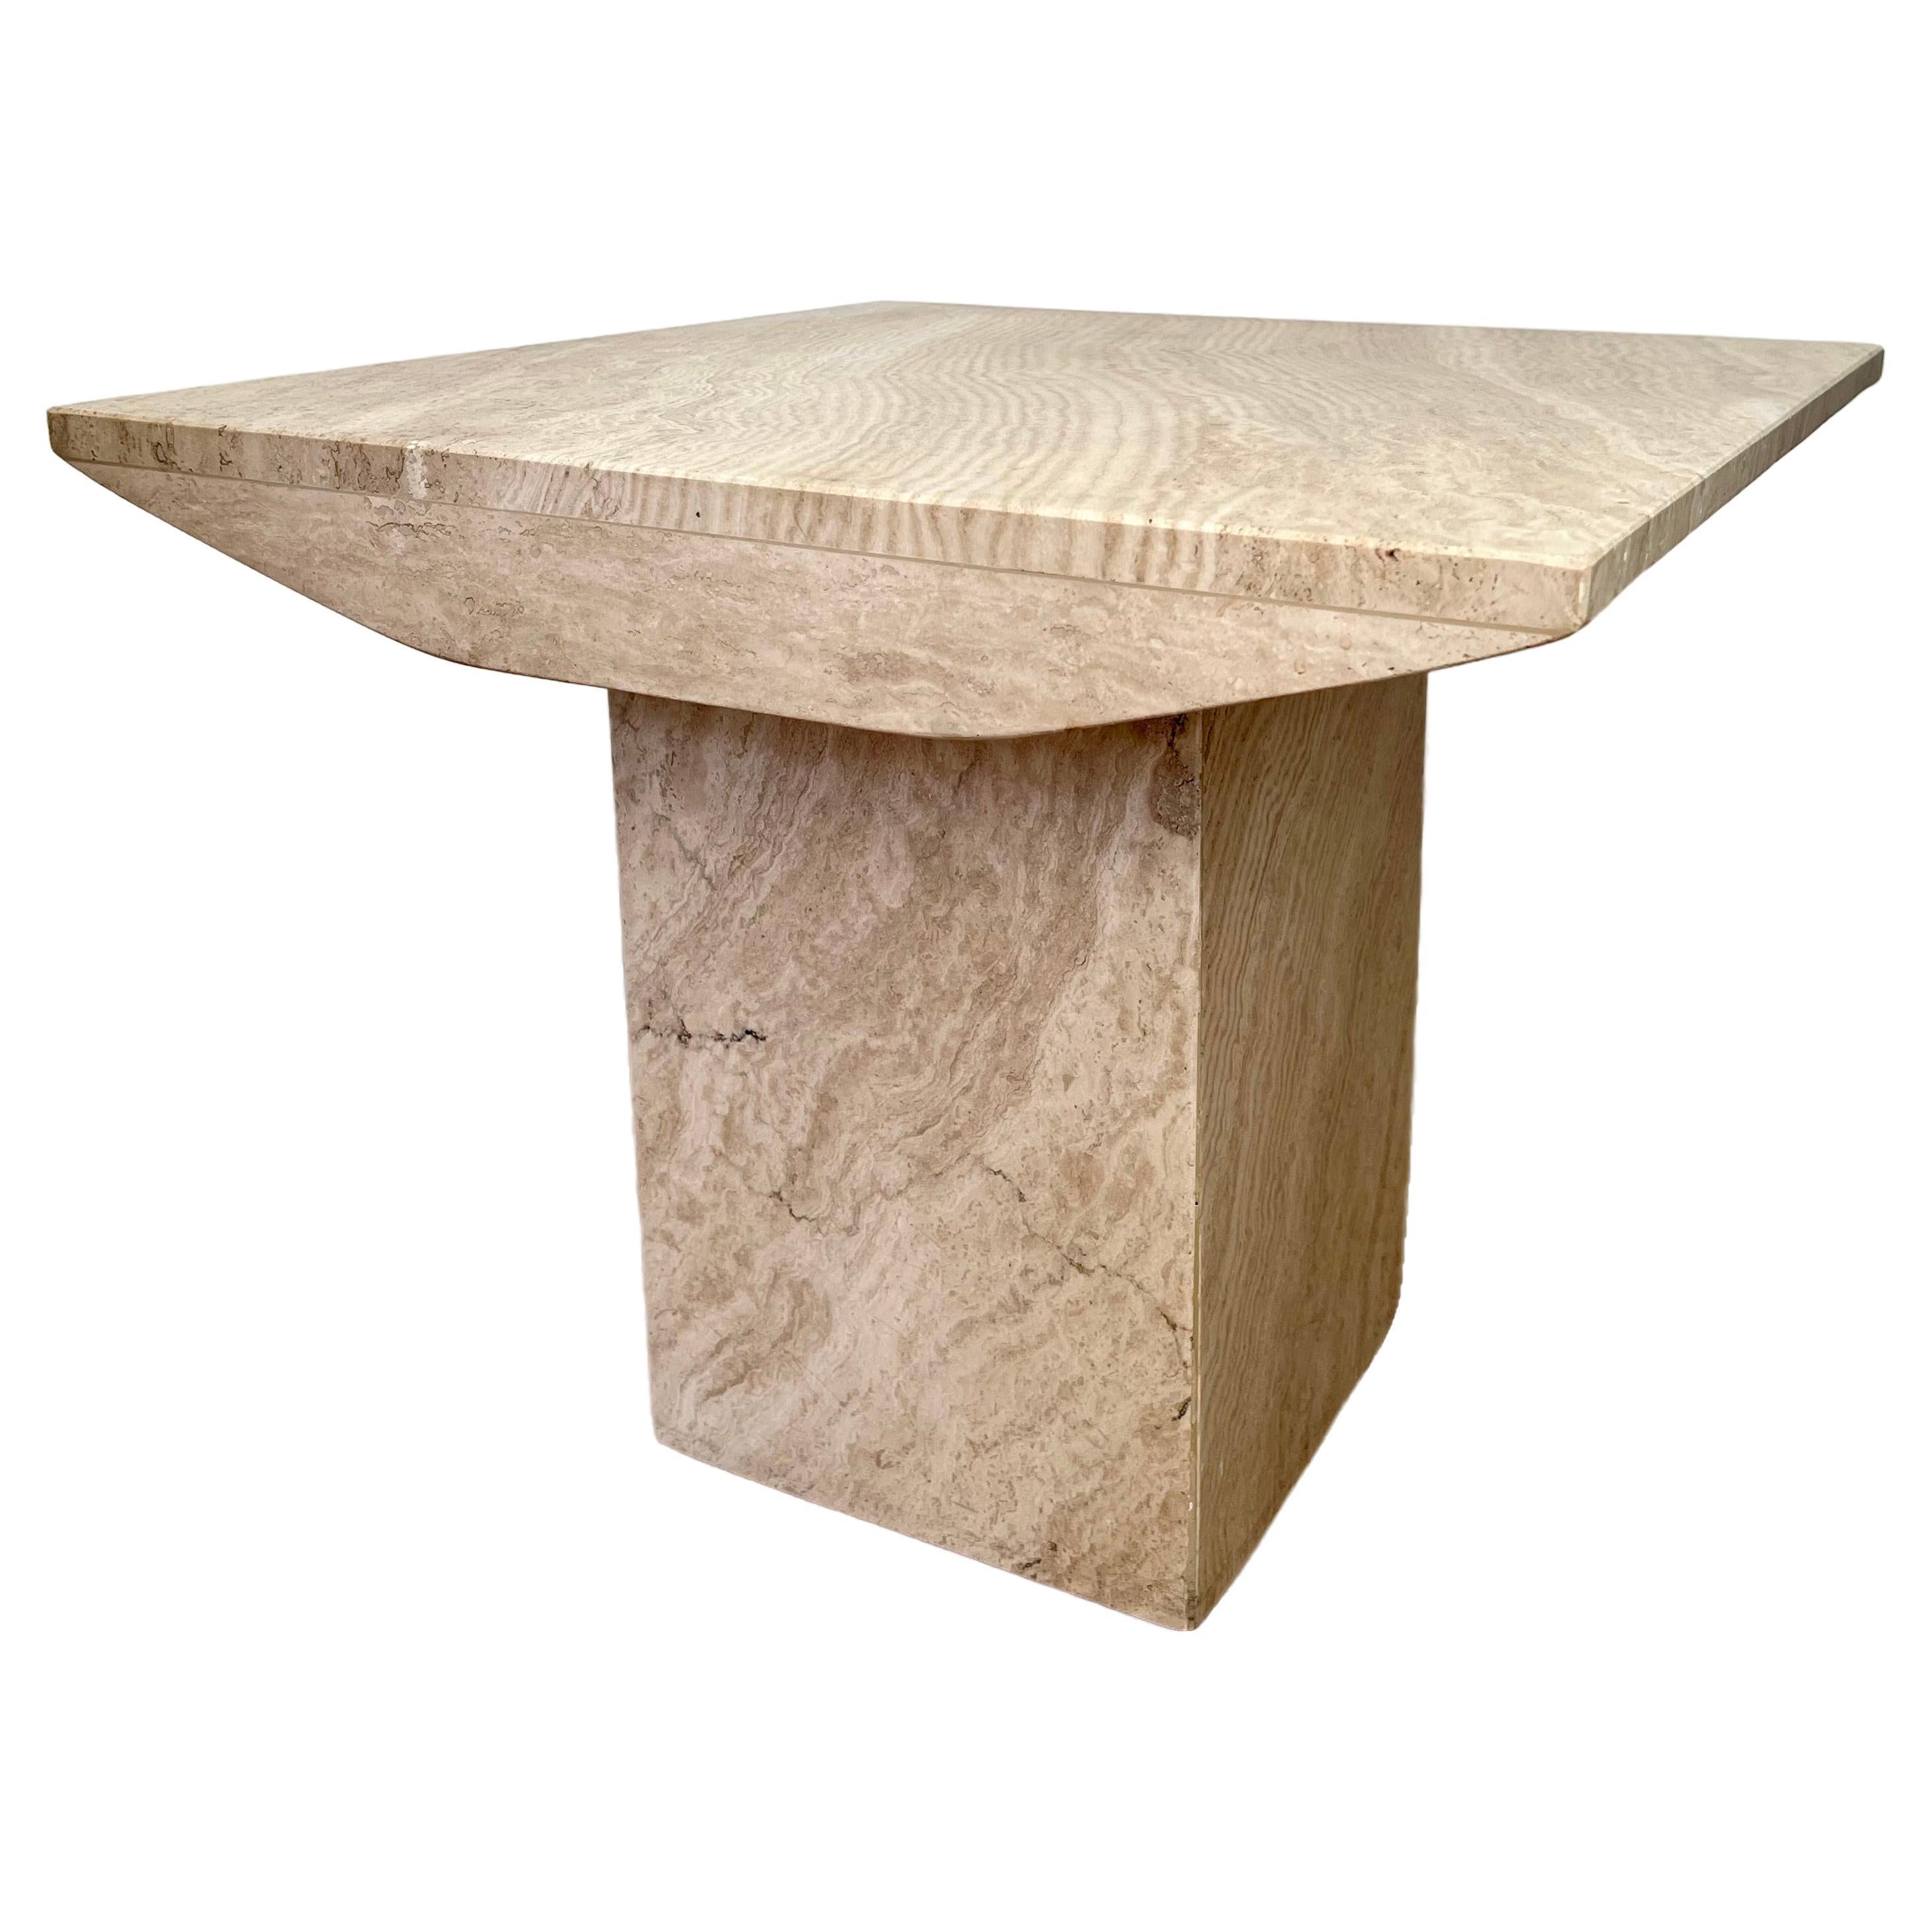 Table d'appoint carrée en pierre travertin naturelle